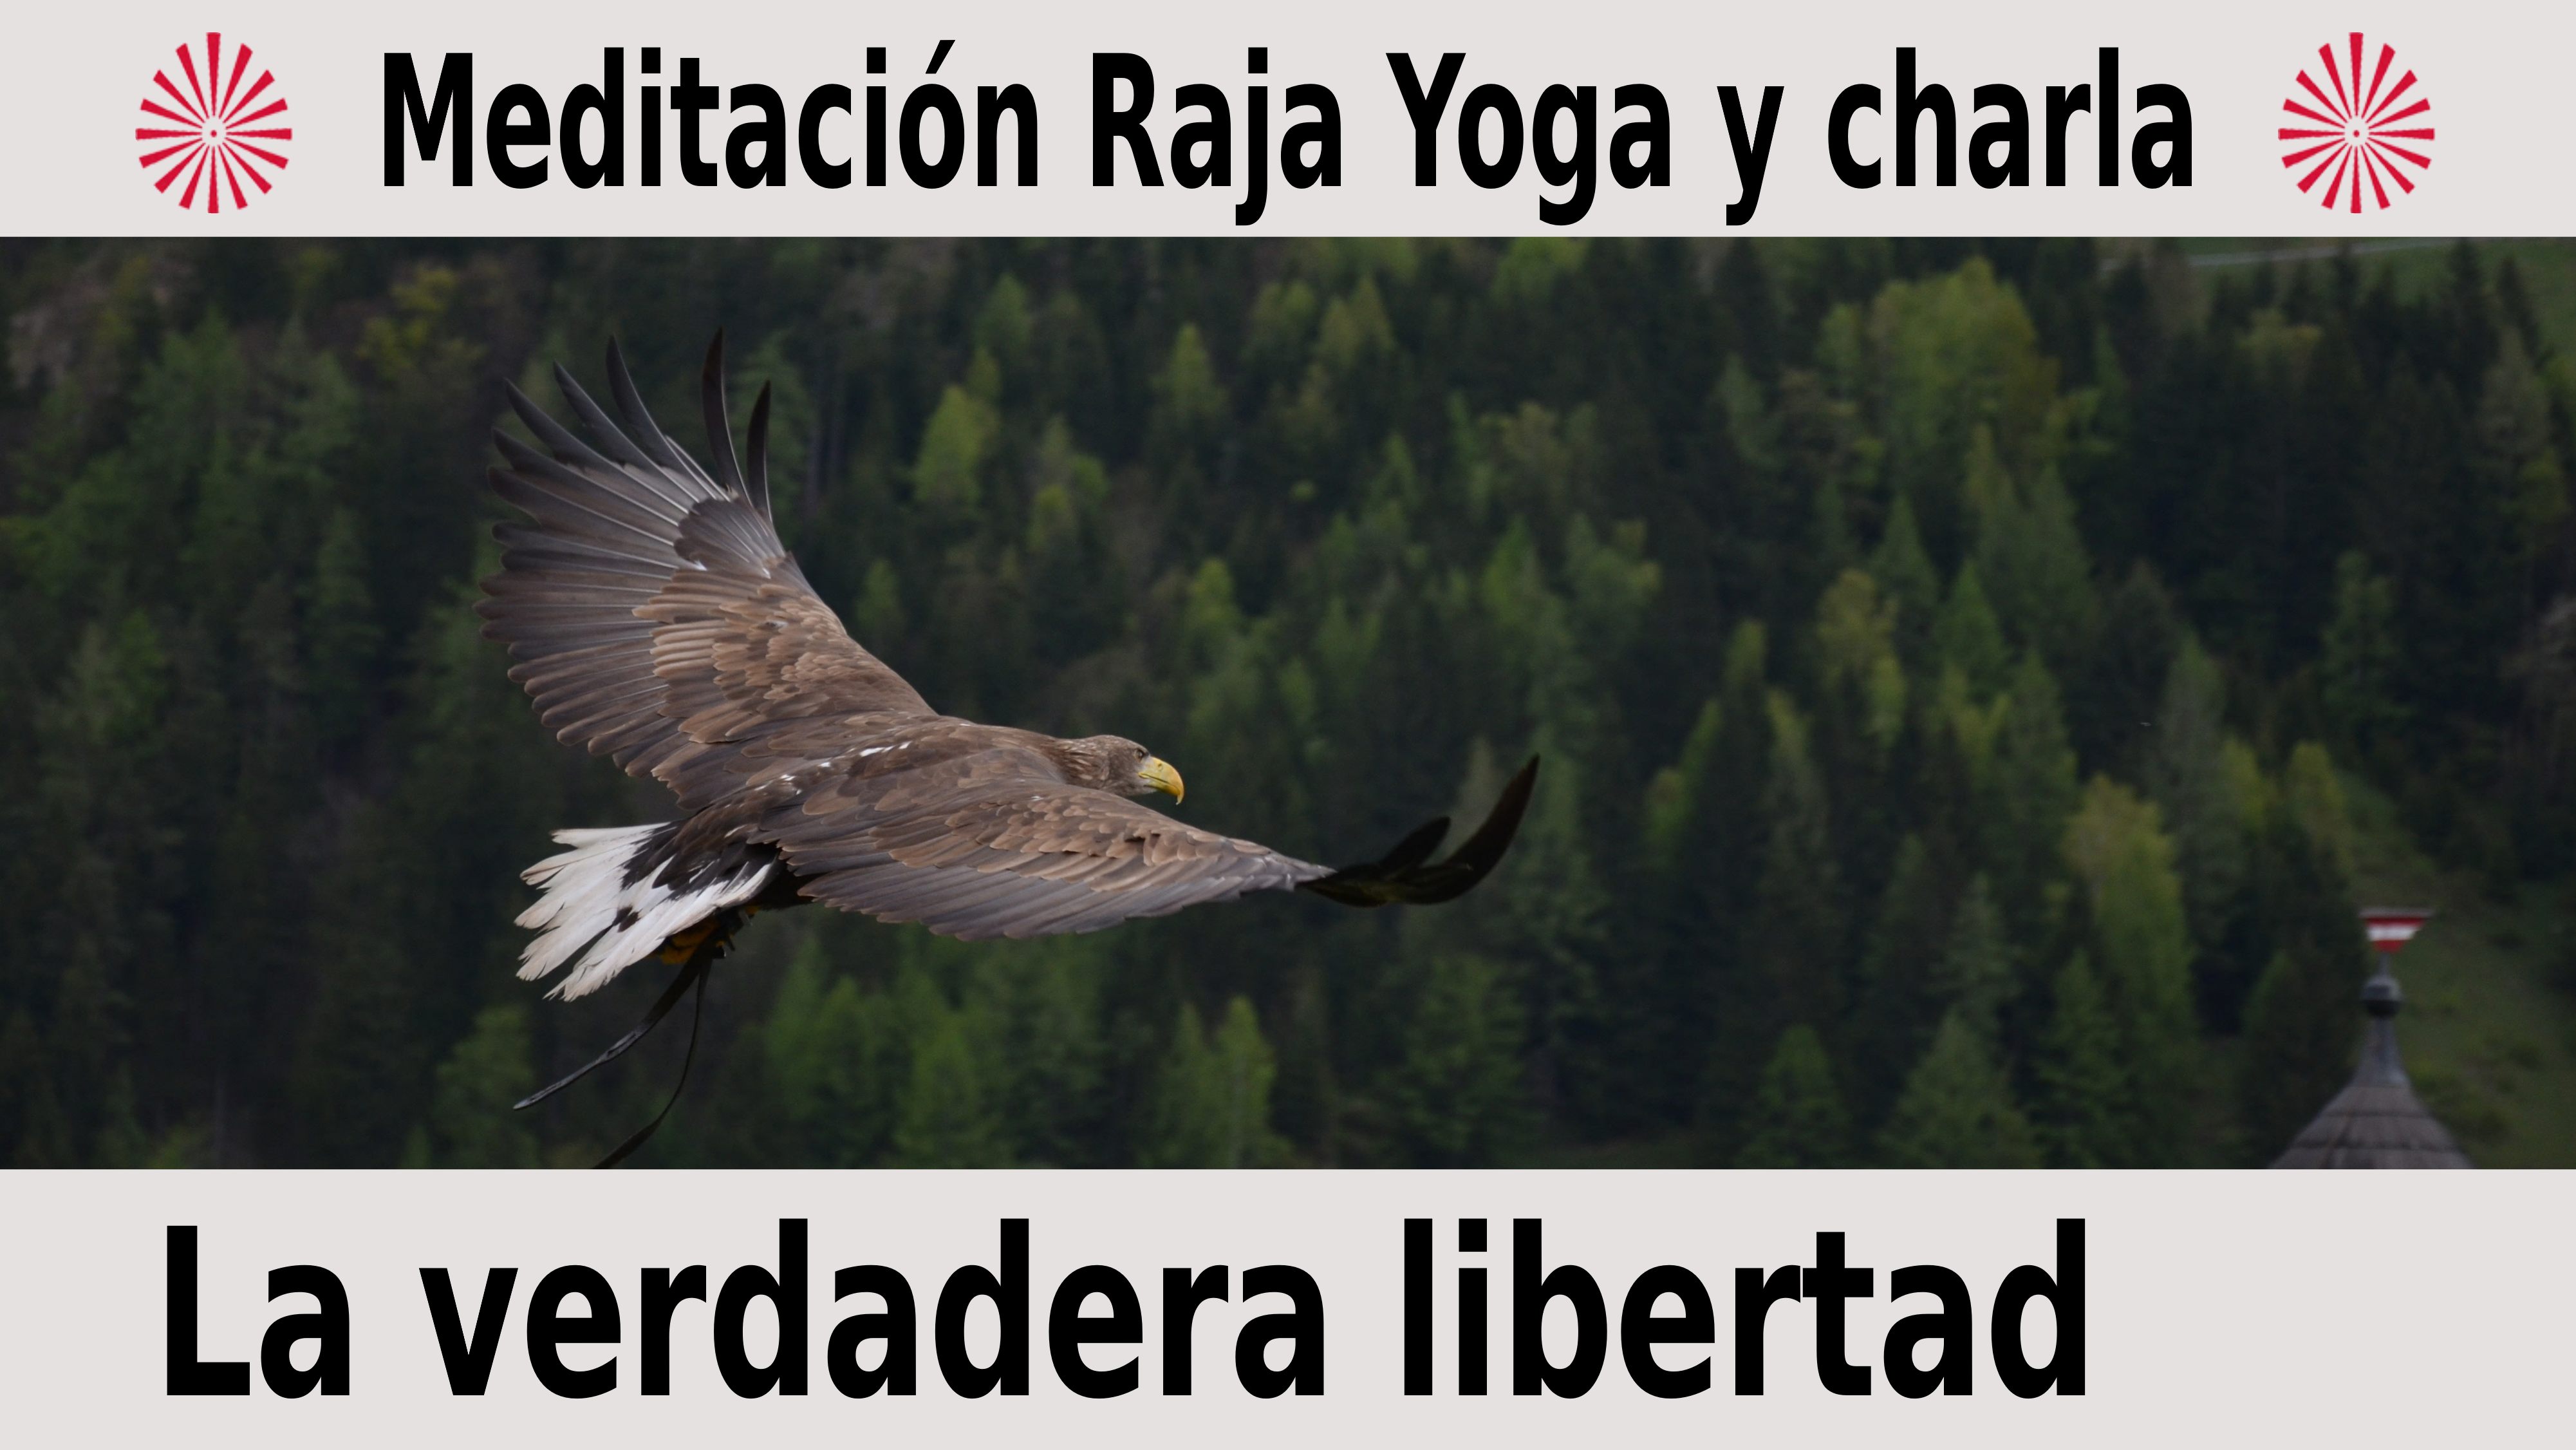 Meditación Raja Yoga y charla: La verdadera libertad (10 Diciembre 2020) On-line desde Barcelona